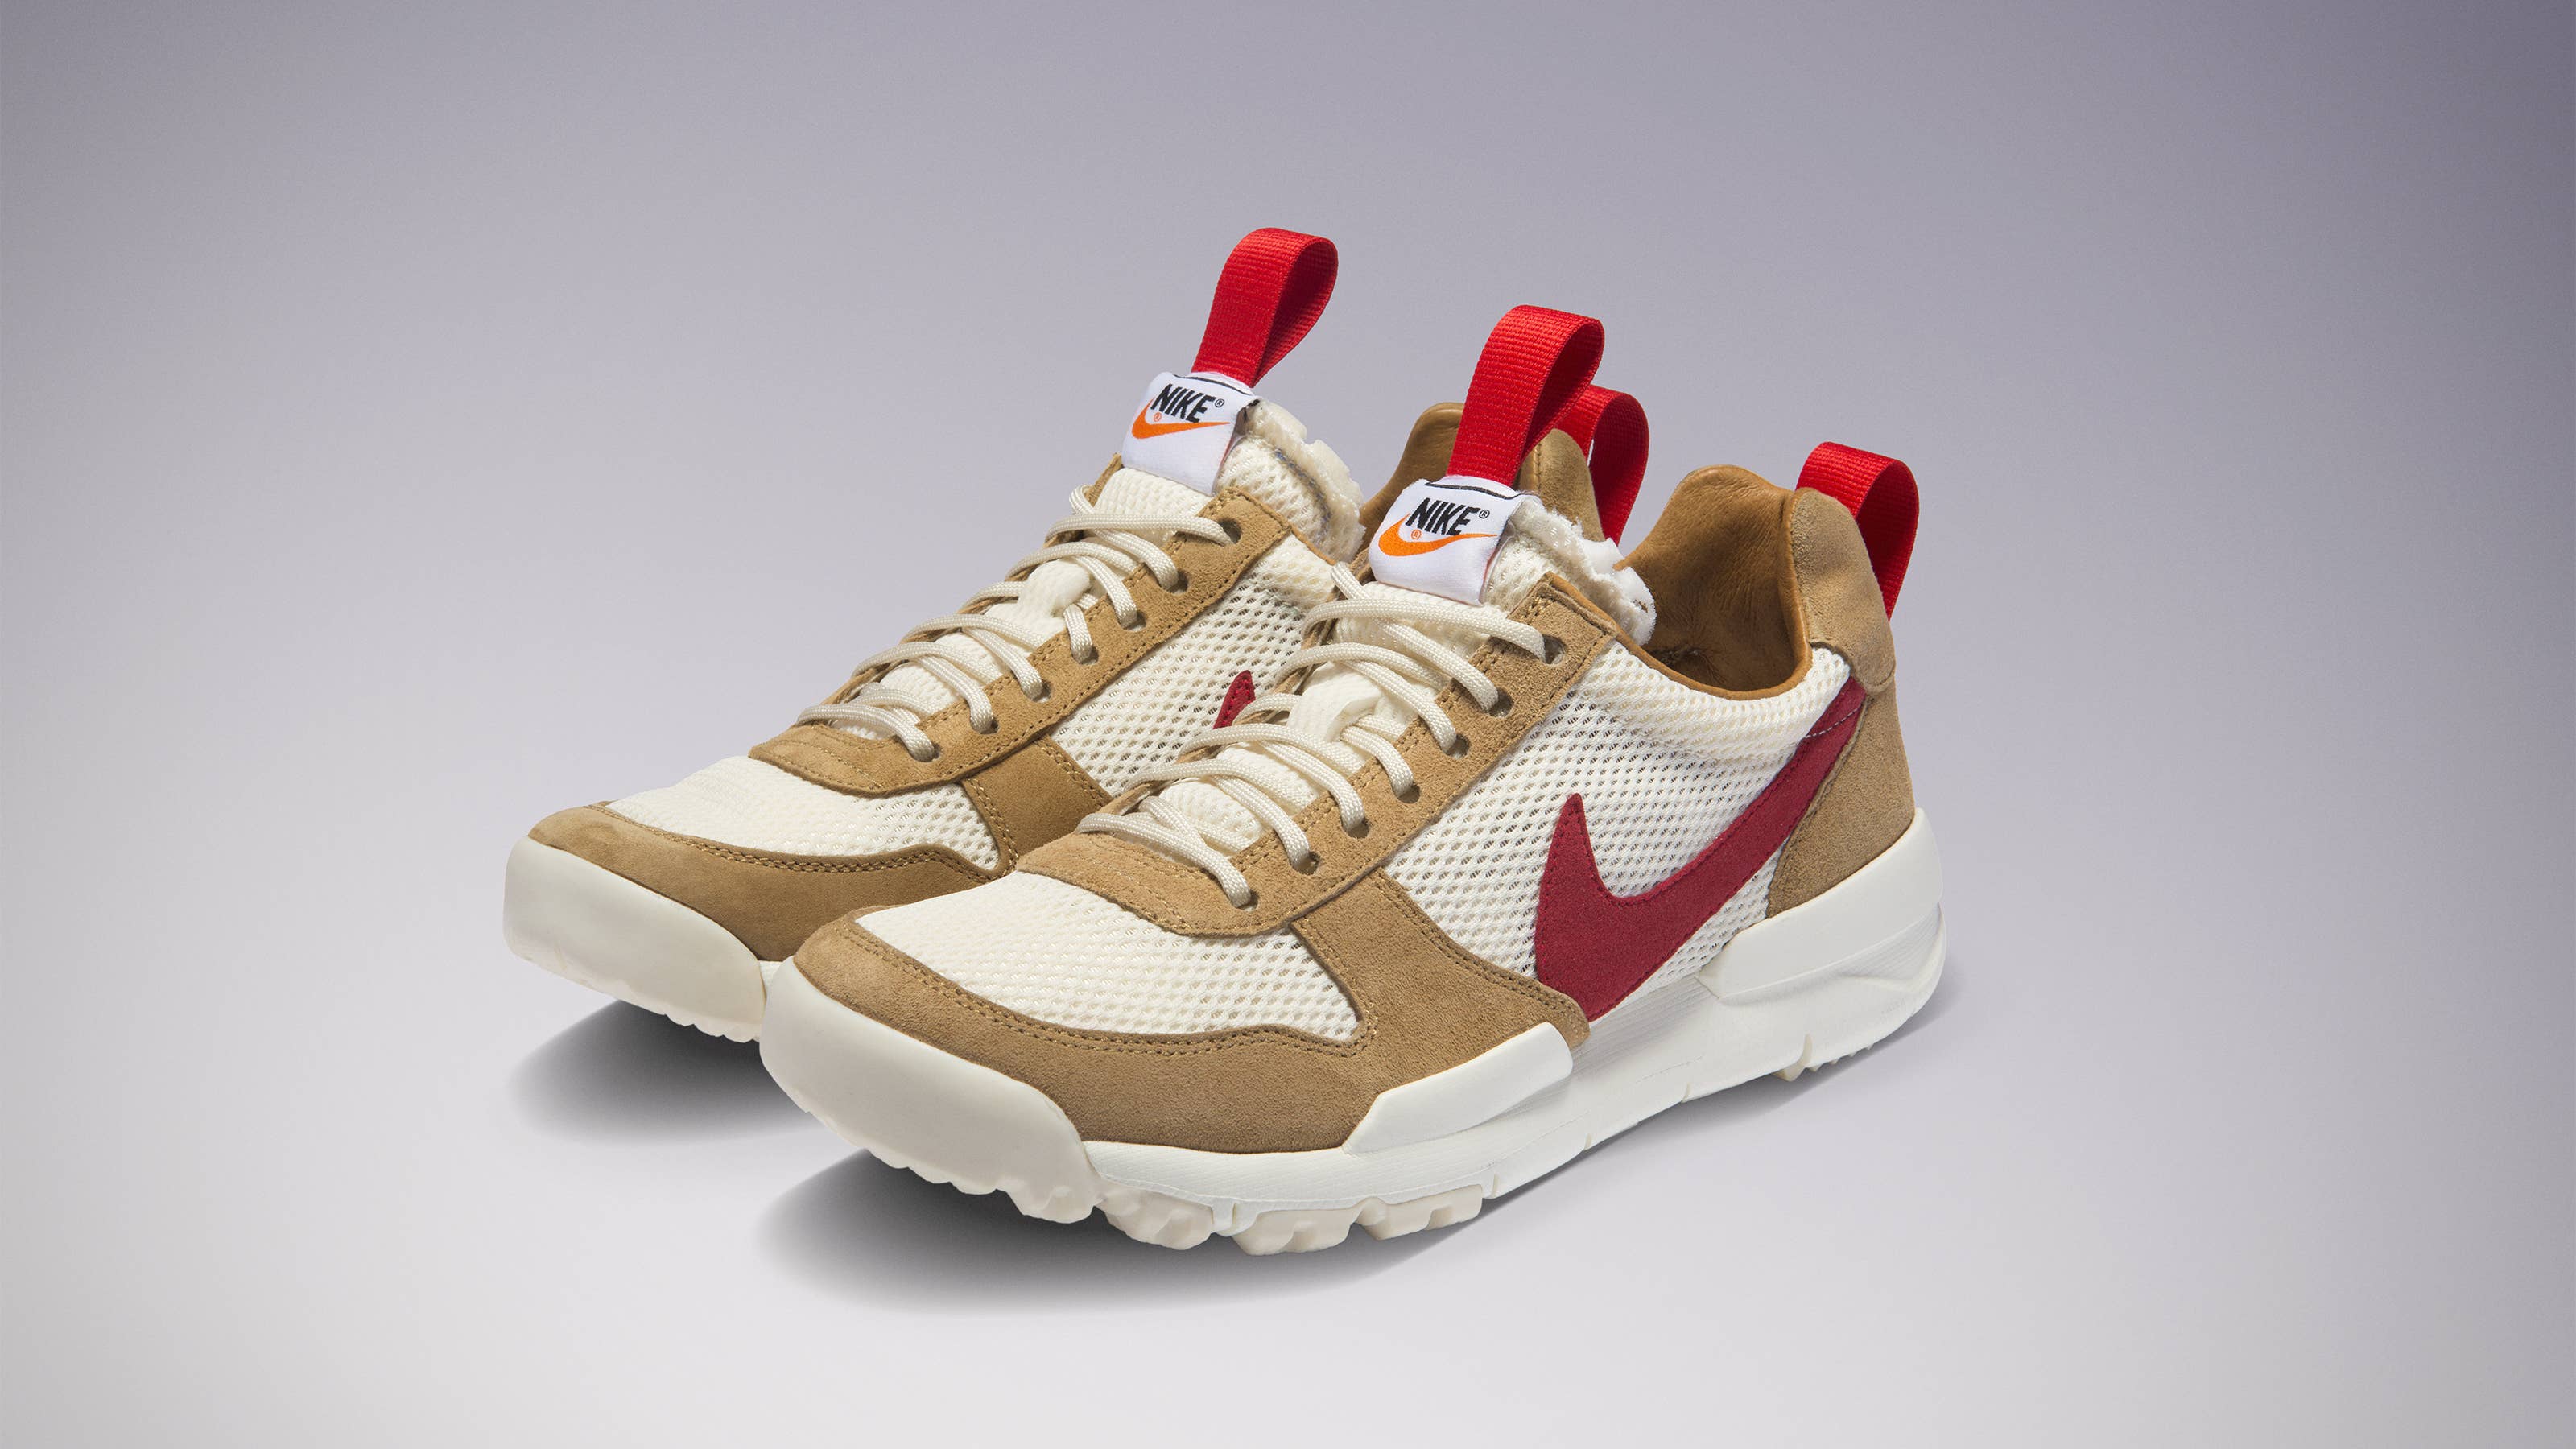 Tom Sachs Breaks Down the Nike Mars Yard 2.0 Sneaker 